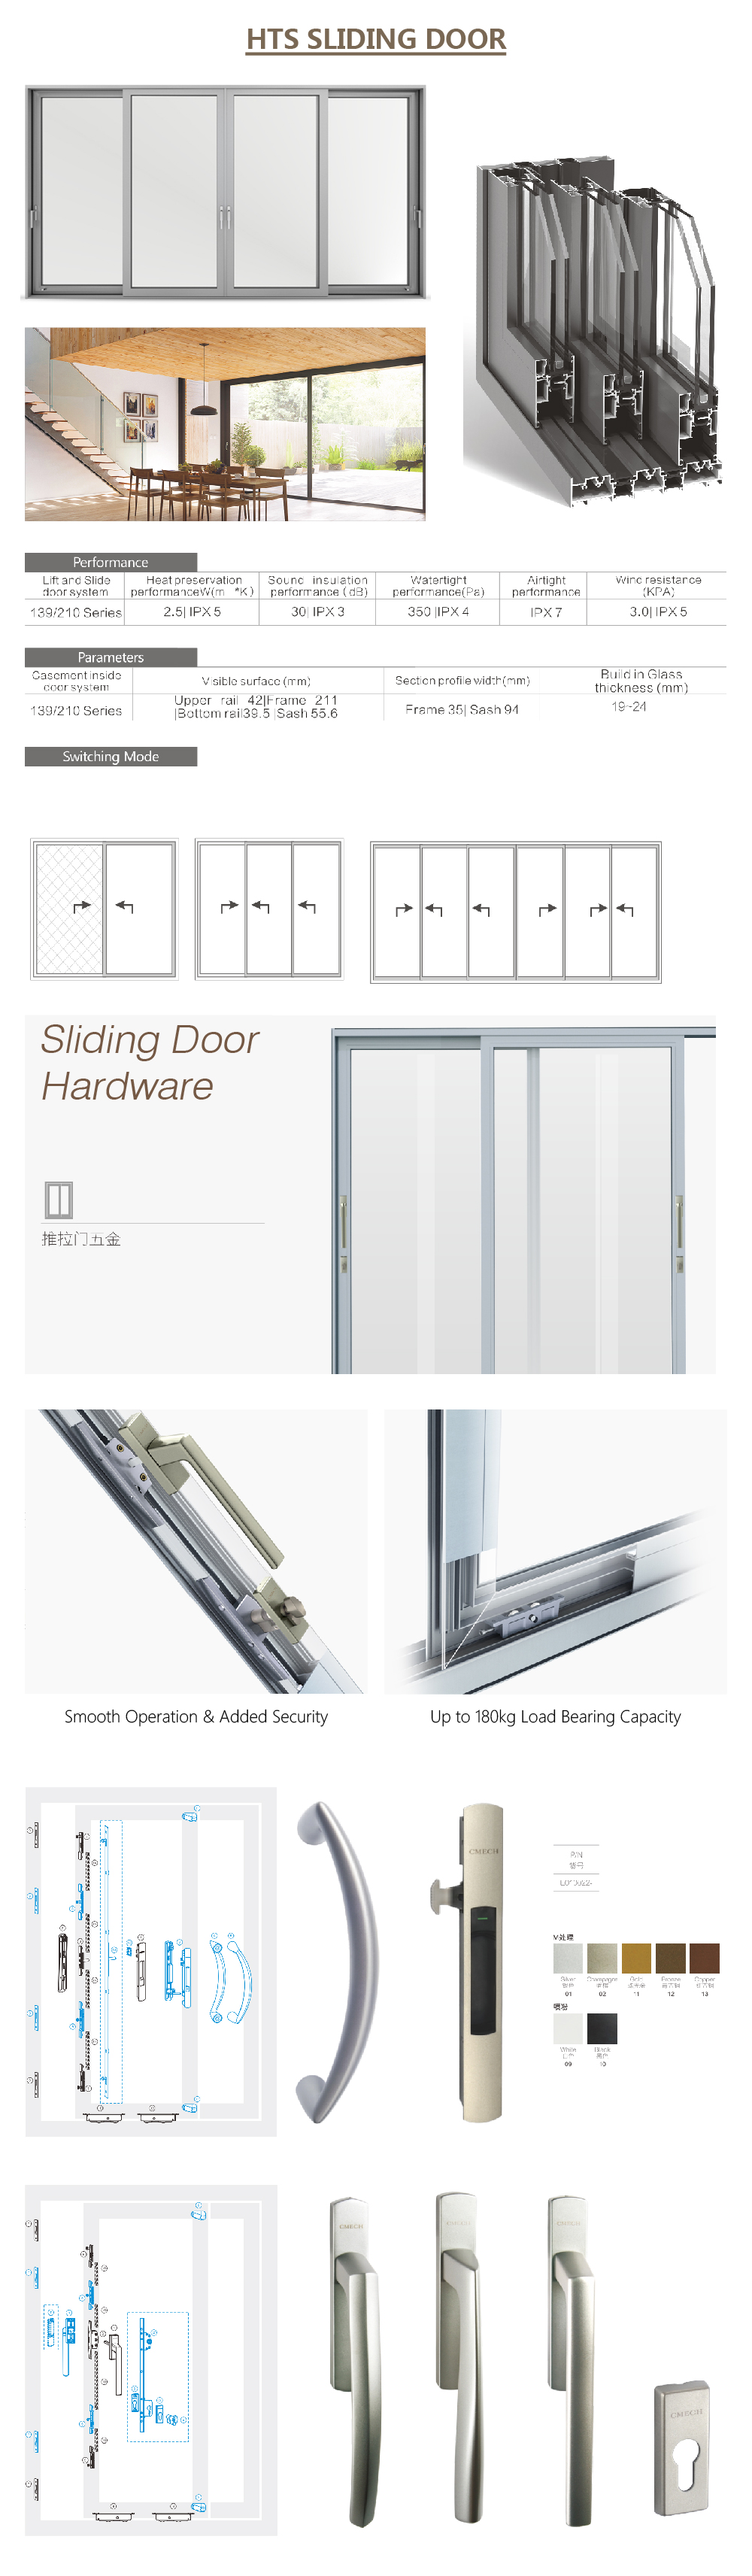 black sliding door,aluminium sliding door rollers,sliding mesh doors,remote control sliding door,Automatic sliding Door Closer,Aluminium Sliding Door Details